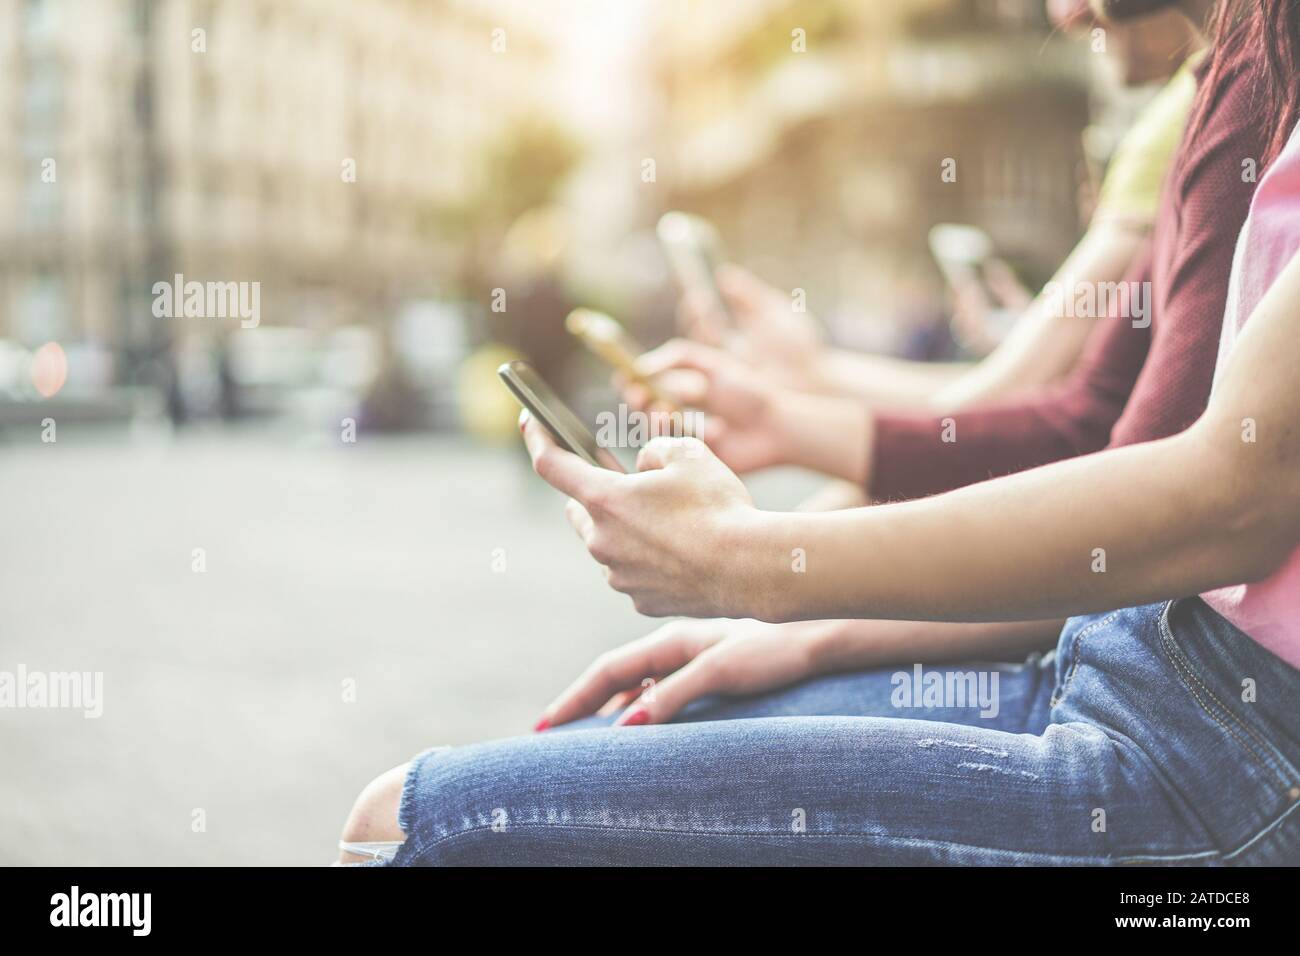 Eine Gruppe von Teenager-Freunden, die Mobiltelefone in der Stadt beobachten - Junge Menschen suchen nach Technologietrends - Entfremdungsmoment für das Problem der neuen Generation Stockfoto